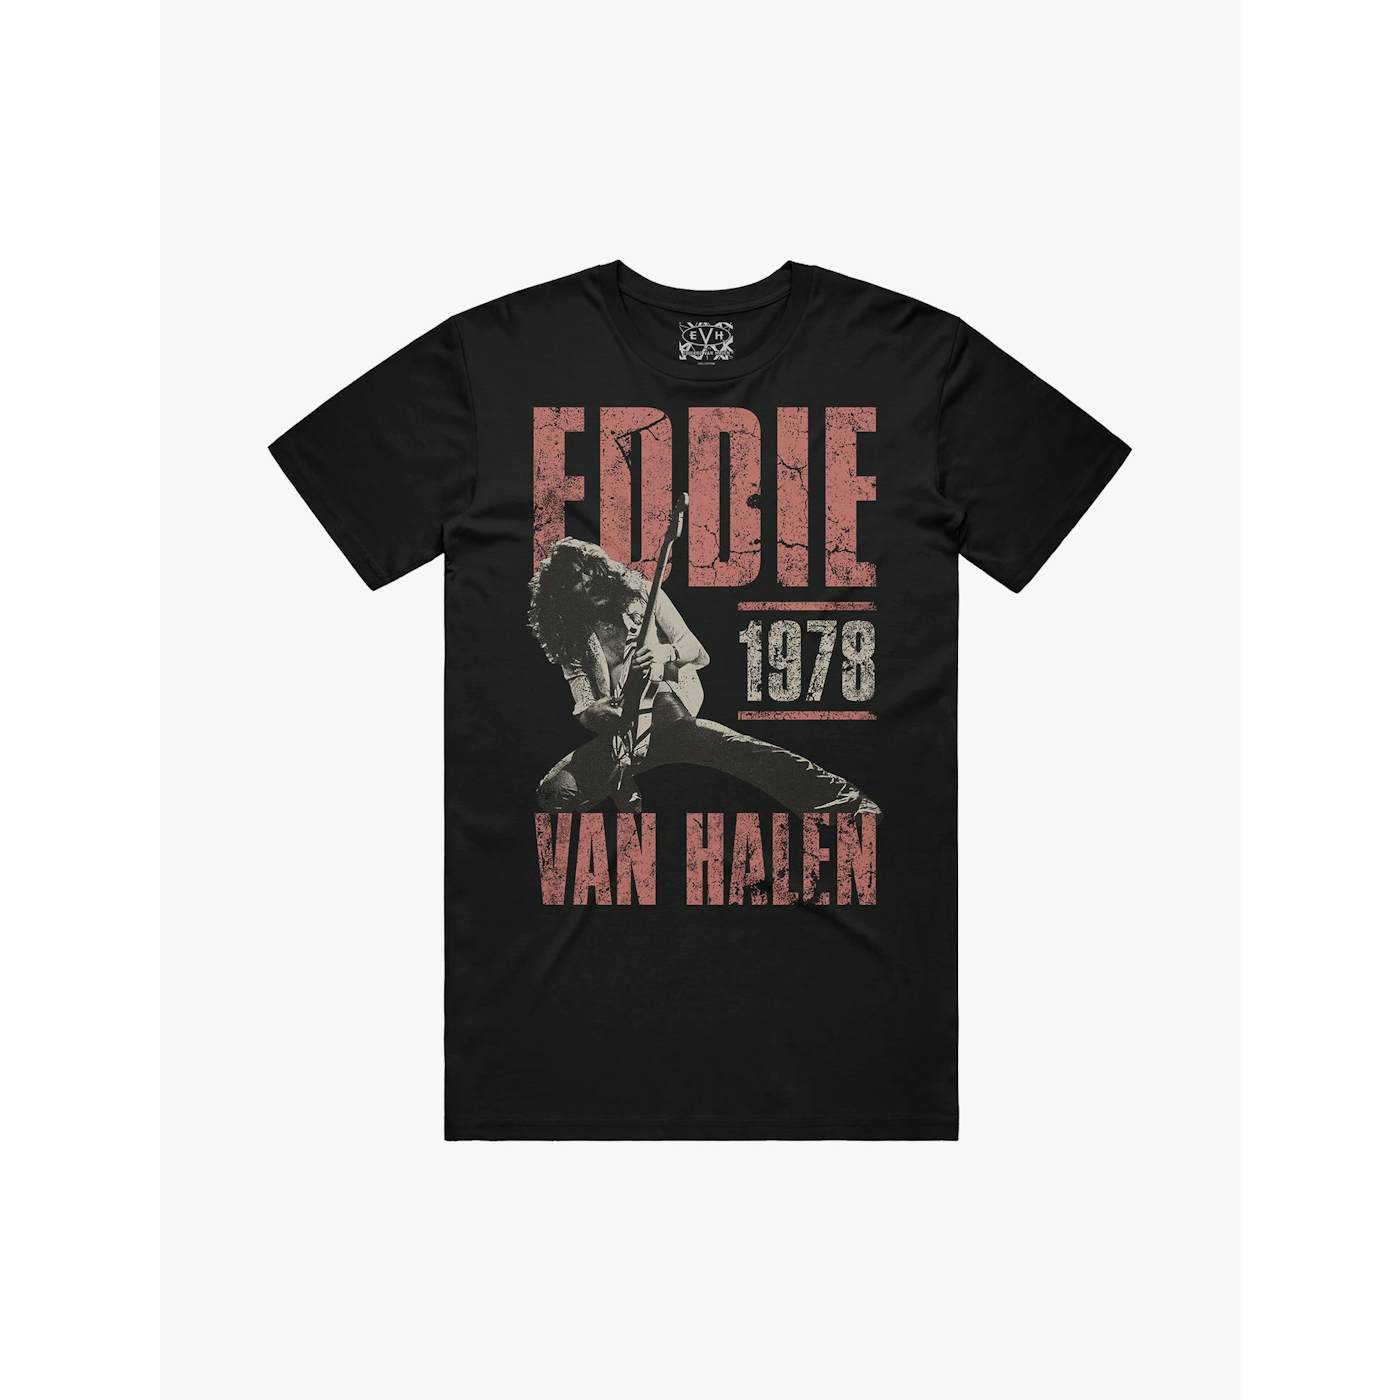 Eddie Van Halen Poster Tee